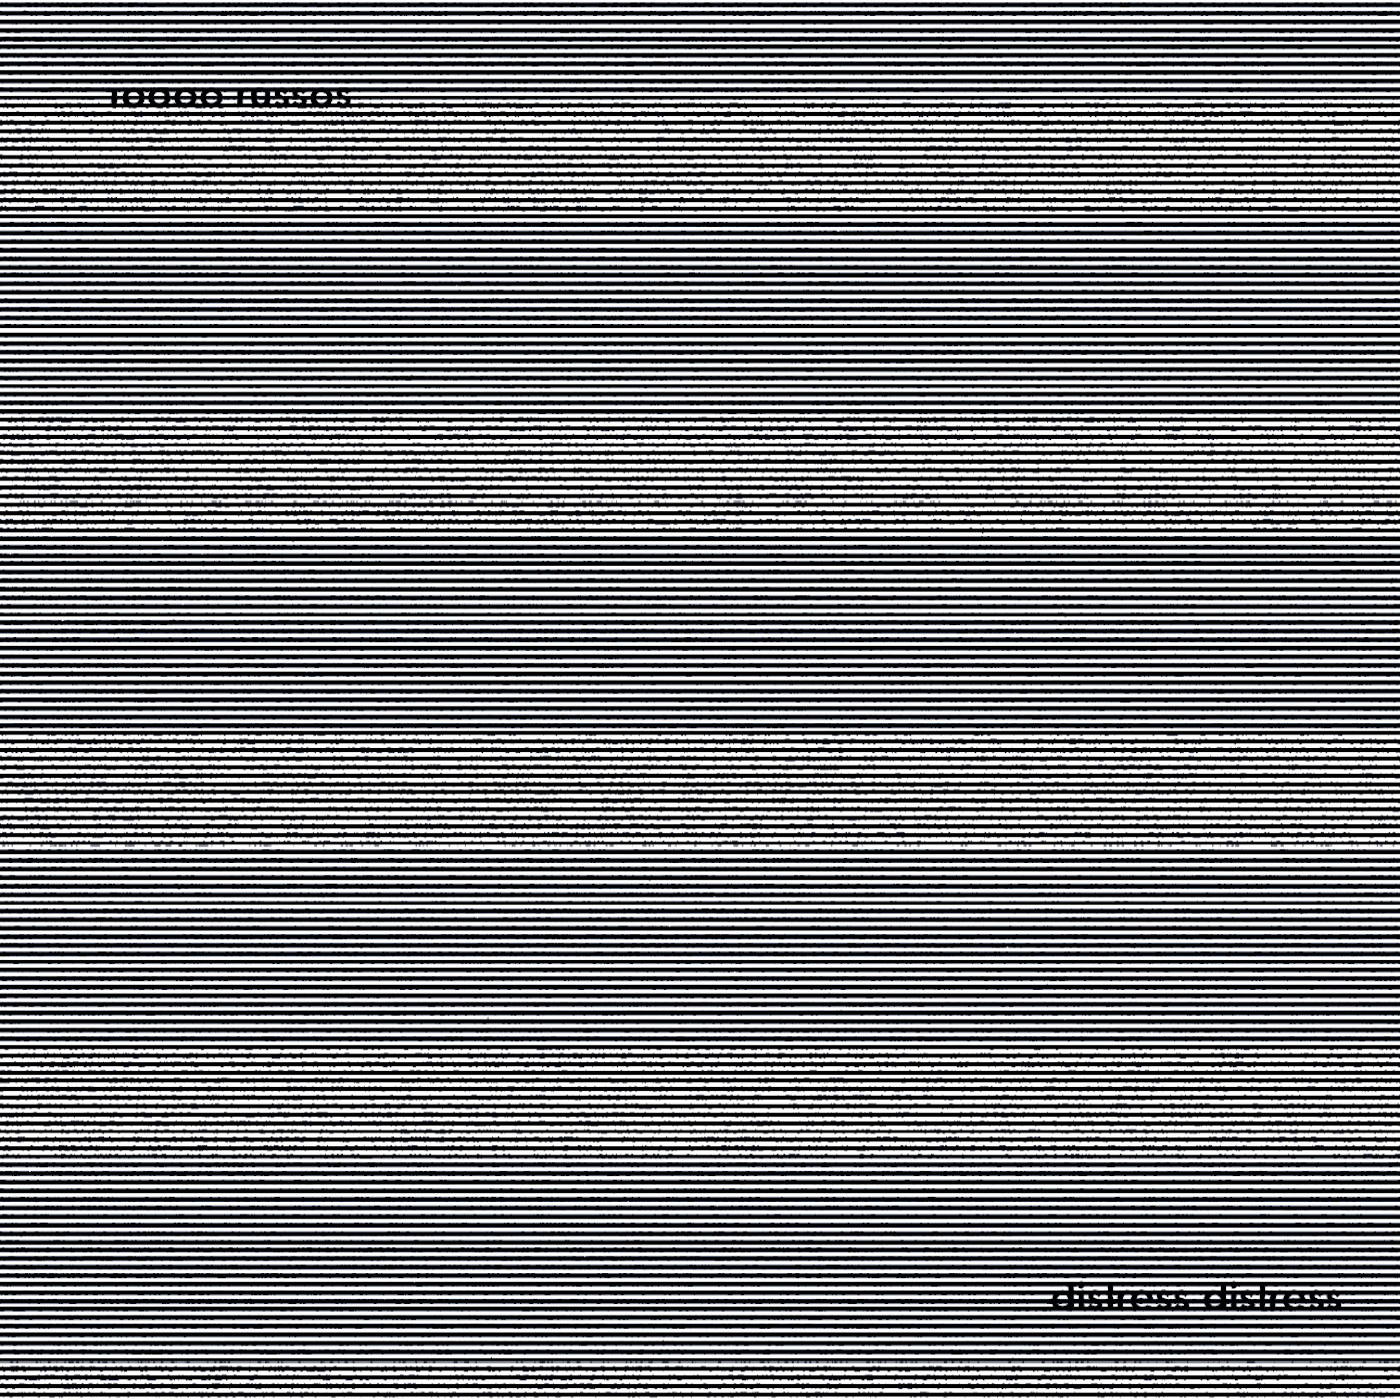 10000 Russos – Distress Distress (2017) [Bandcamp FLAC 24bit/48kHz]